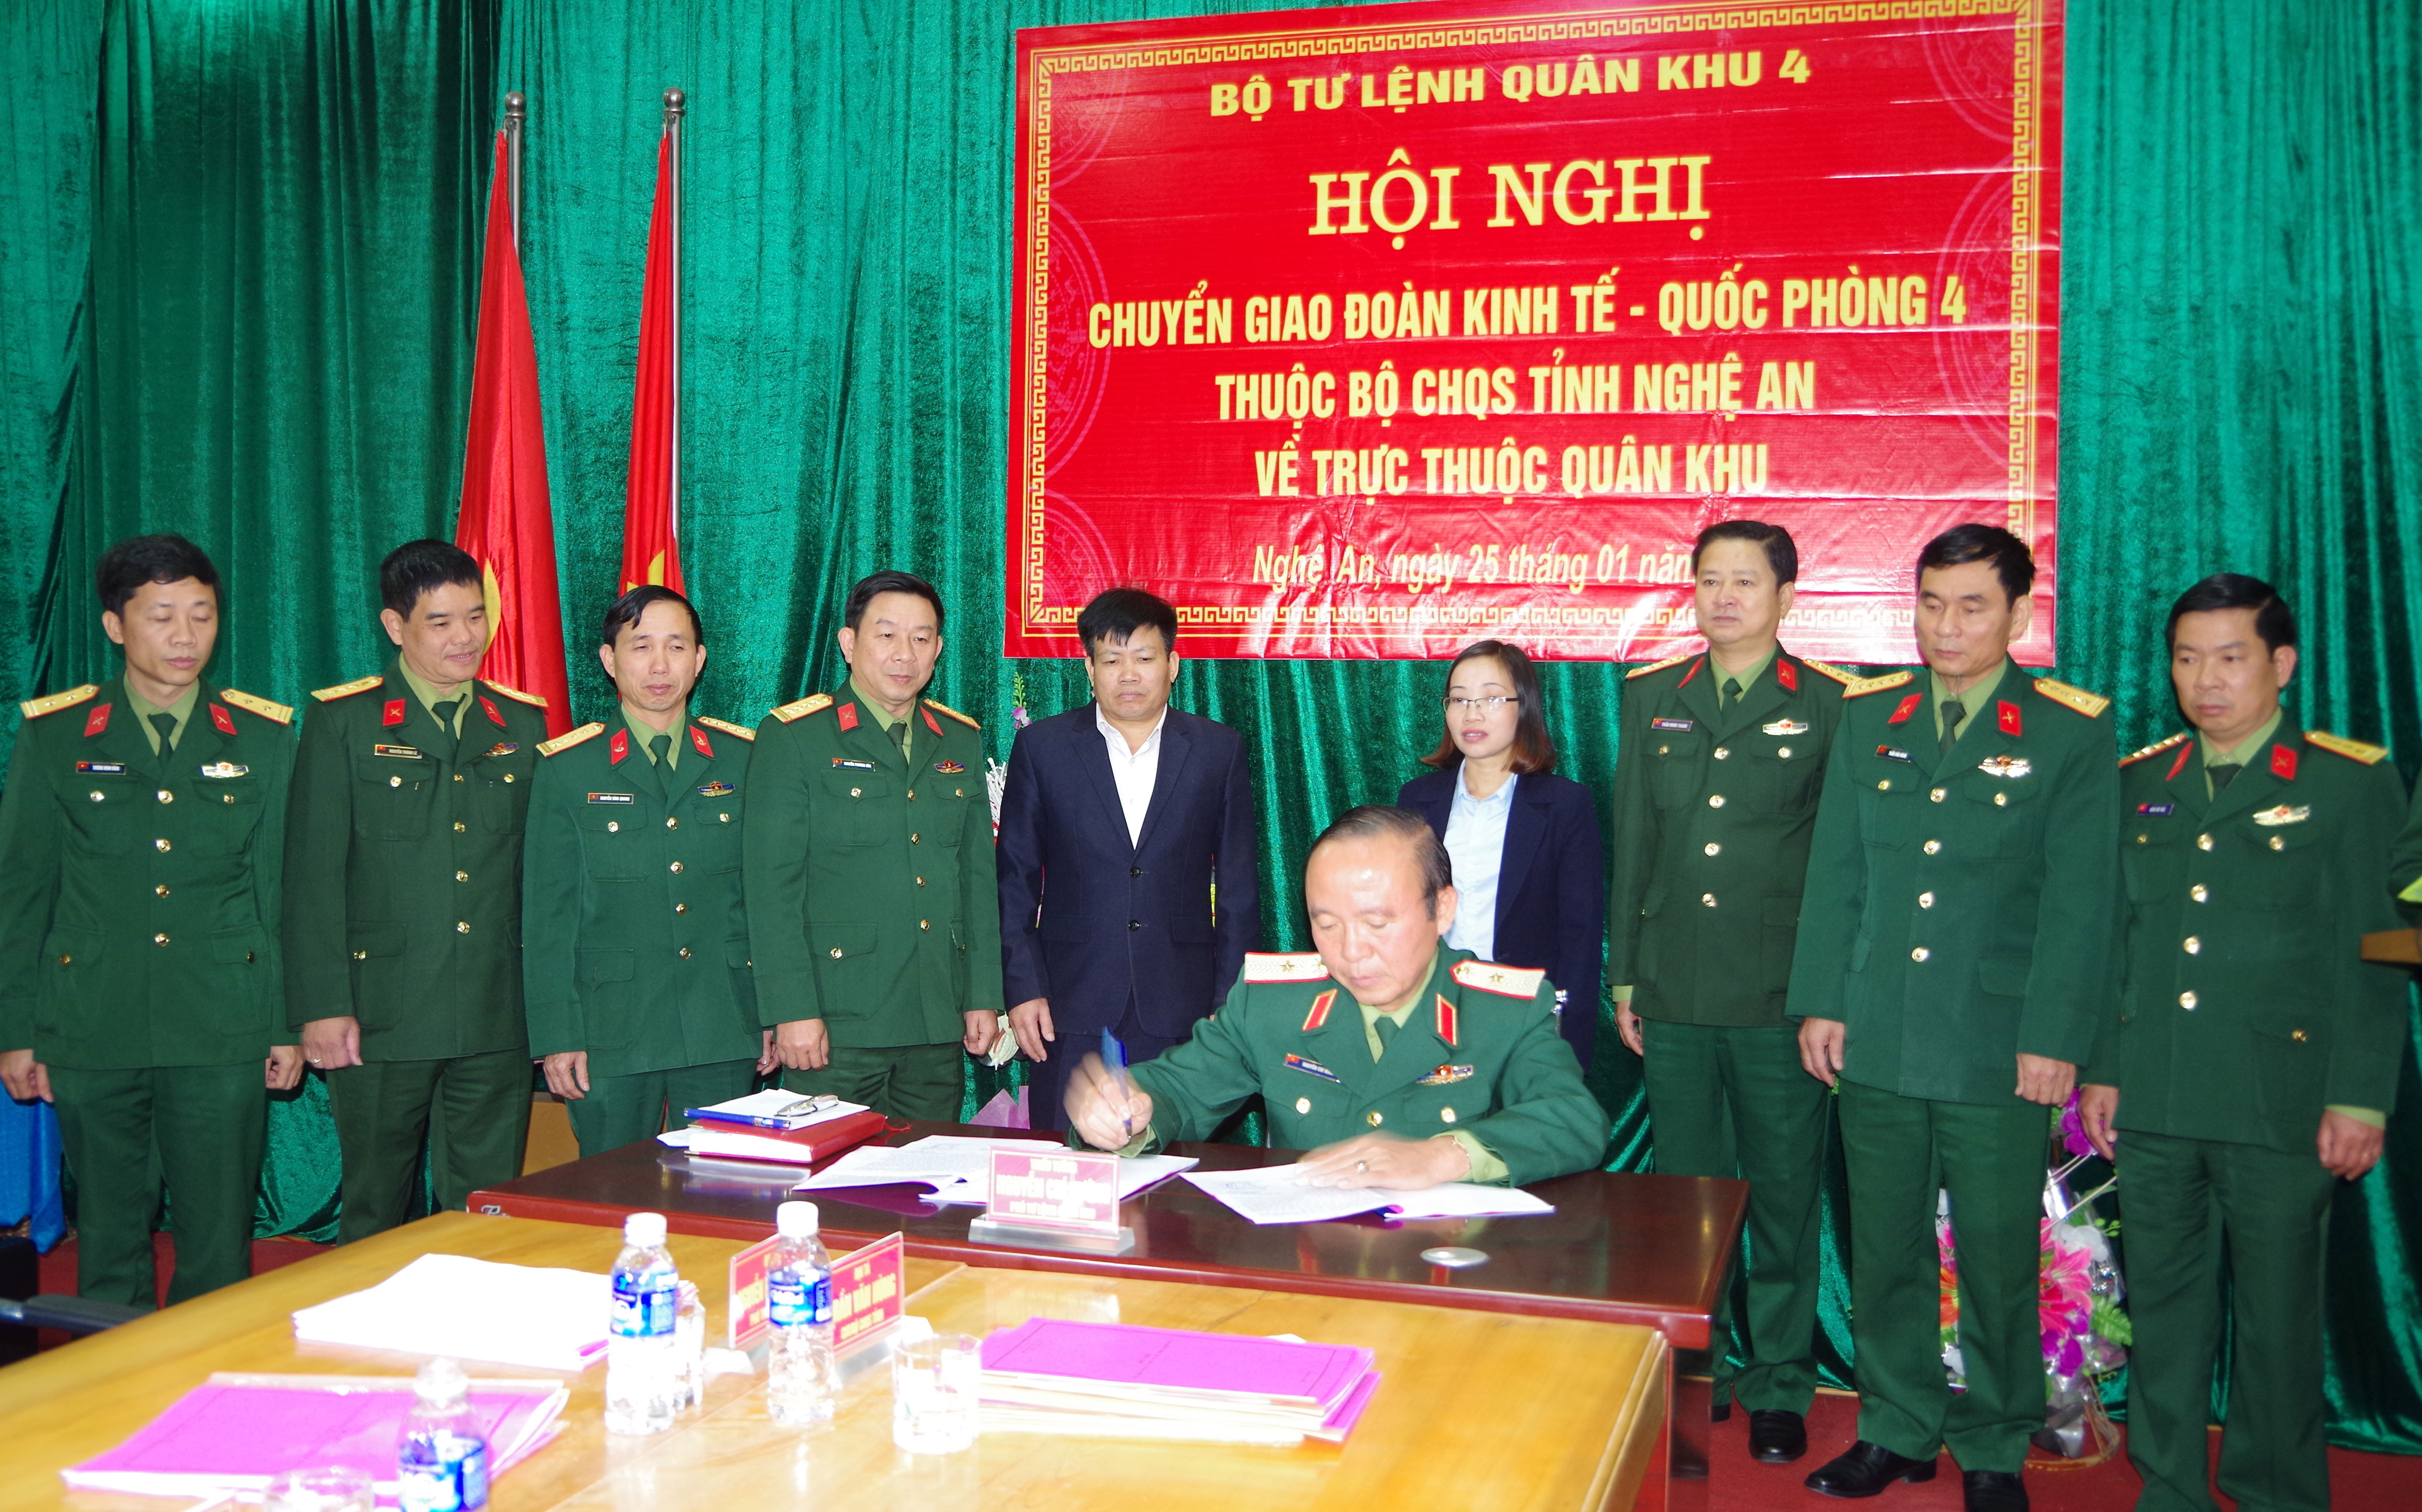 Thiếu tướng Nguyễn Chí Hướng - Phó Tư lệnh Quân khu 4 ký chấp nhận biên bản bàn giao tại hội nghị. Ảnh: Trọng Kiên